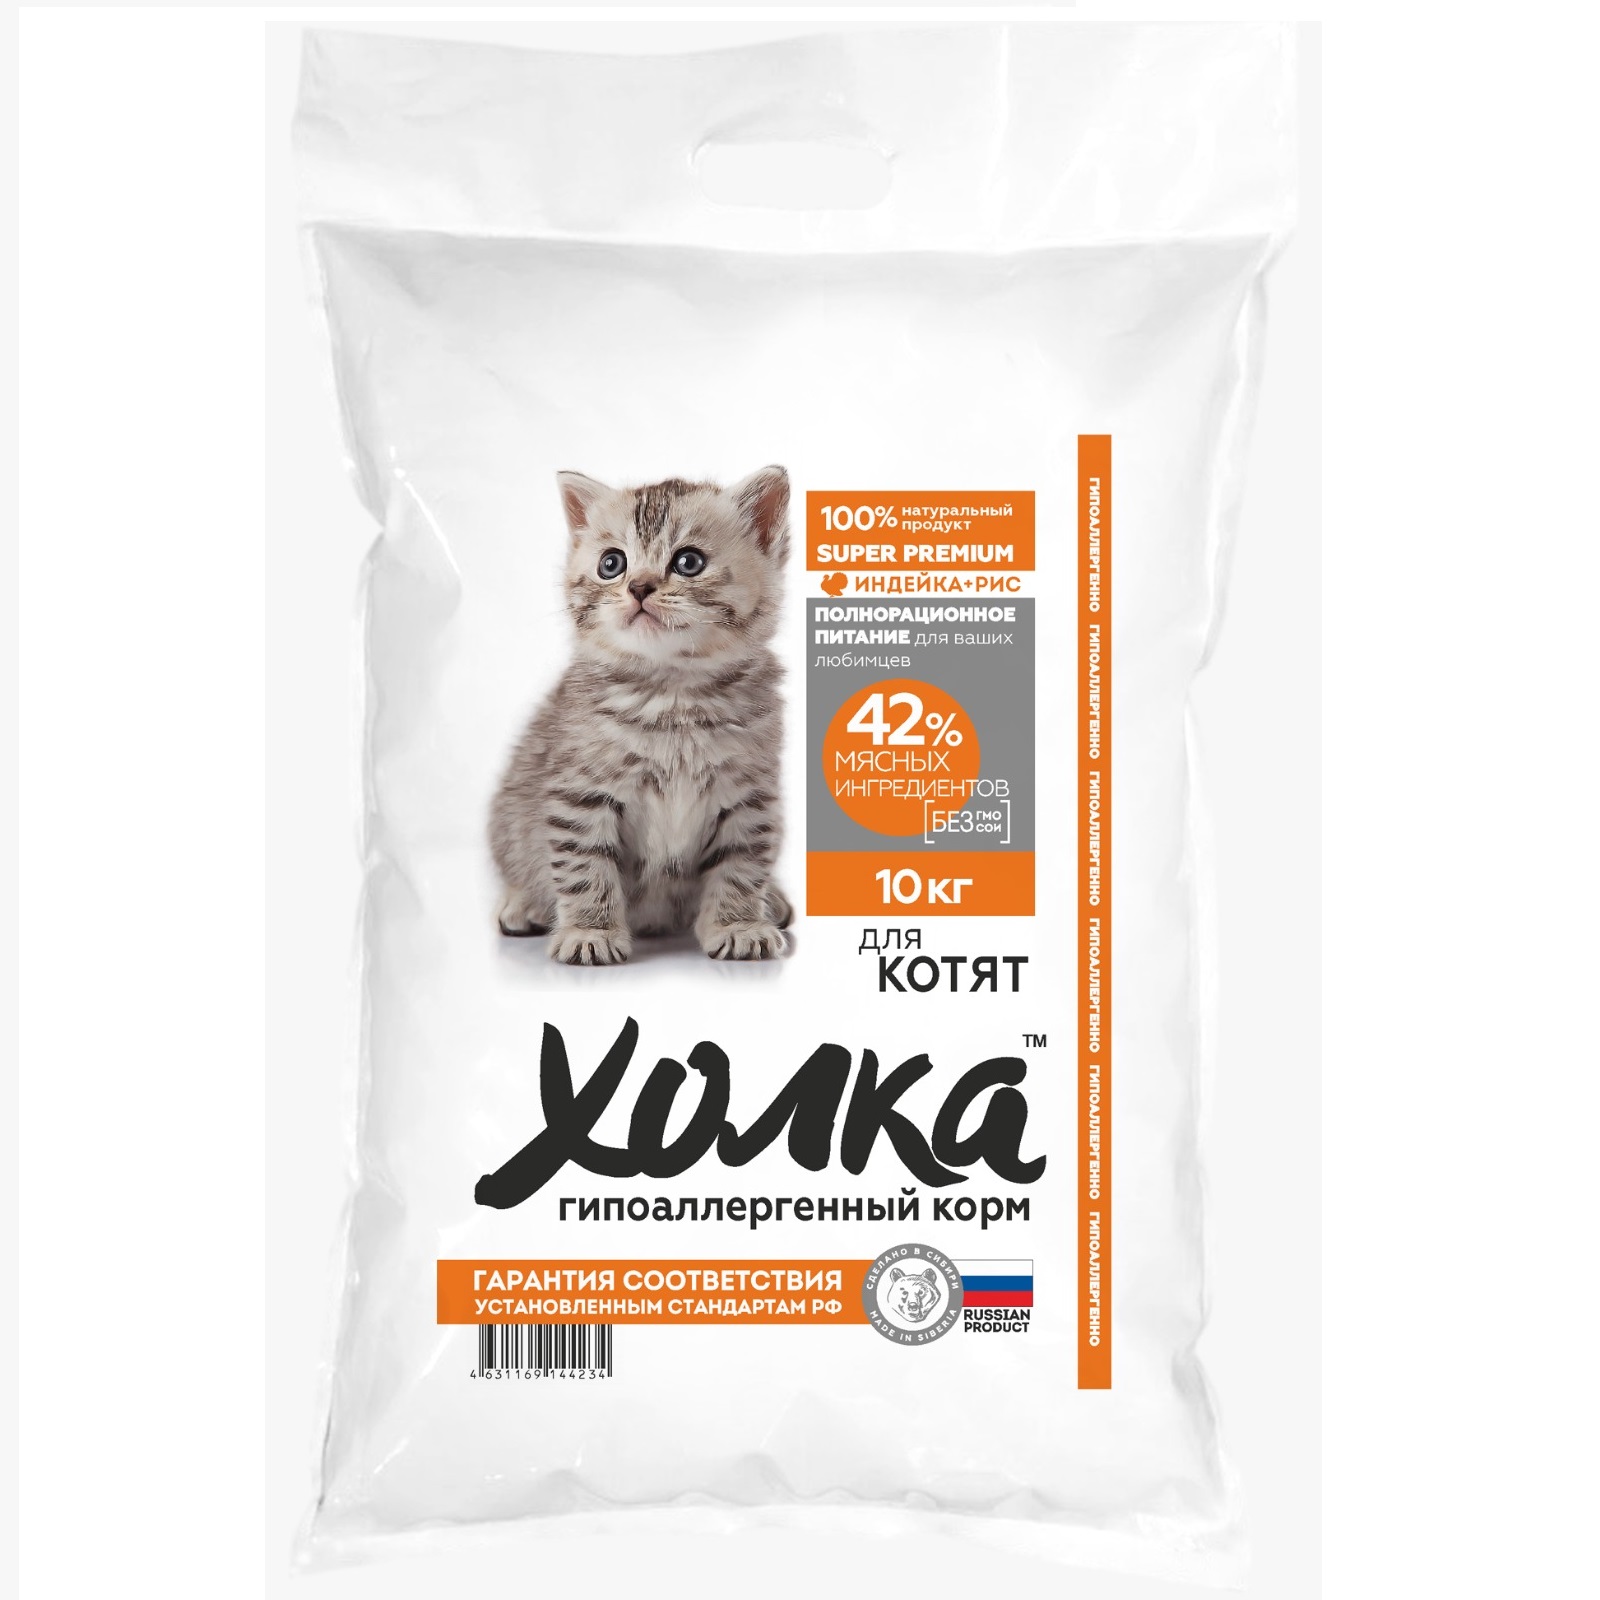 Сухой корм для котят Холка гипоаллергенный, с индейкой и рисом, 10 кг